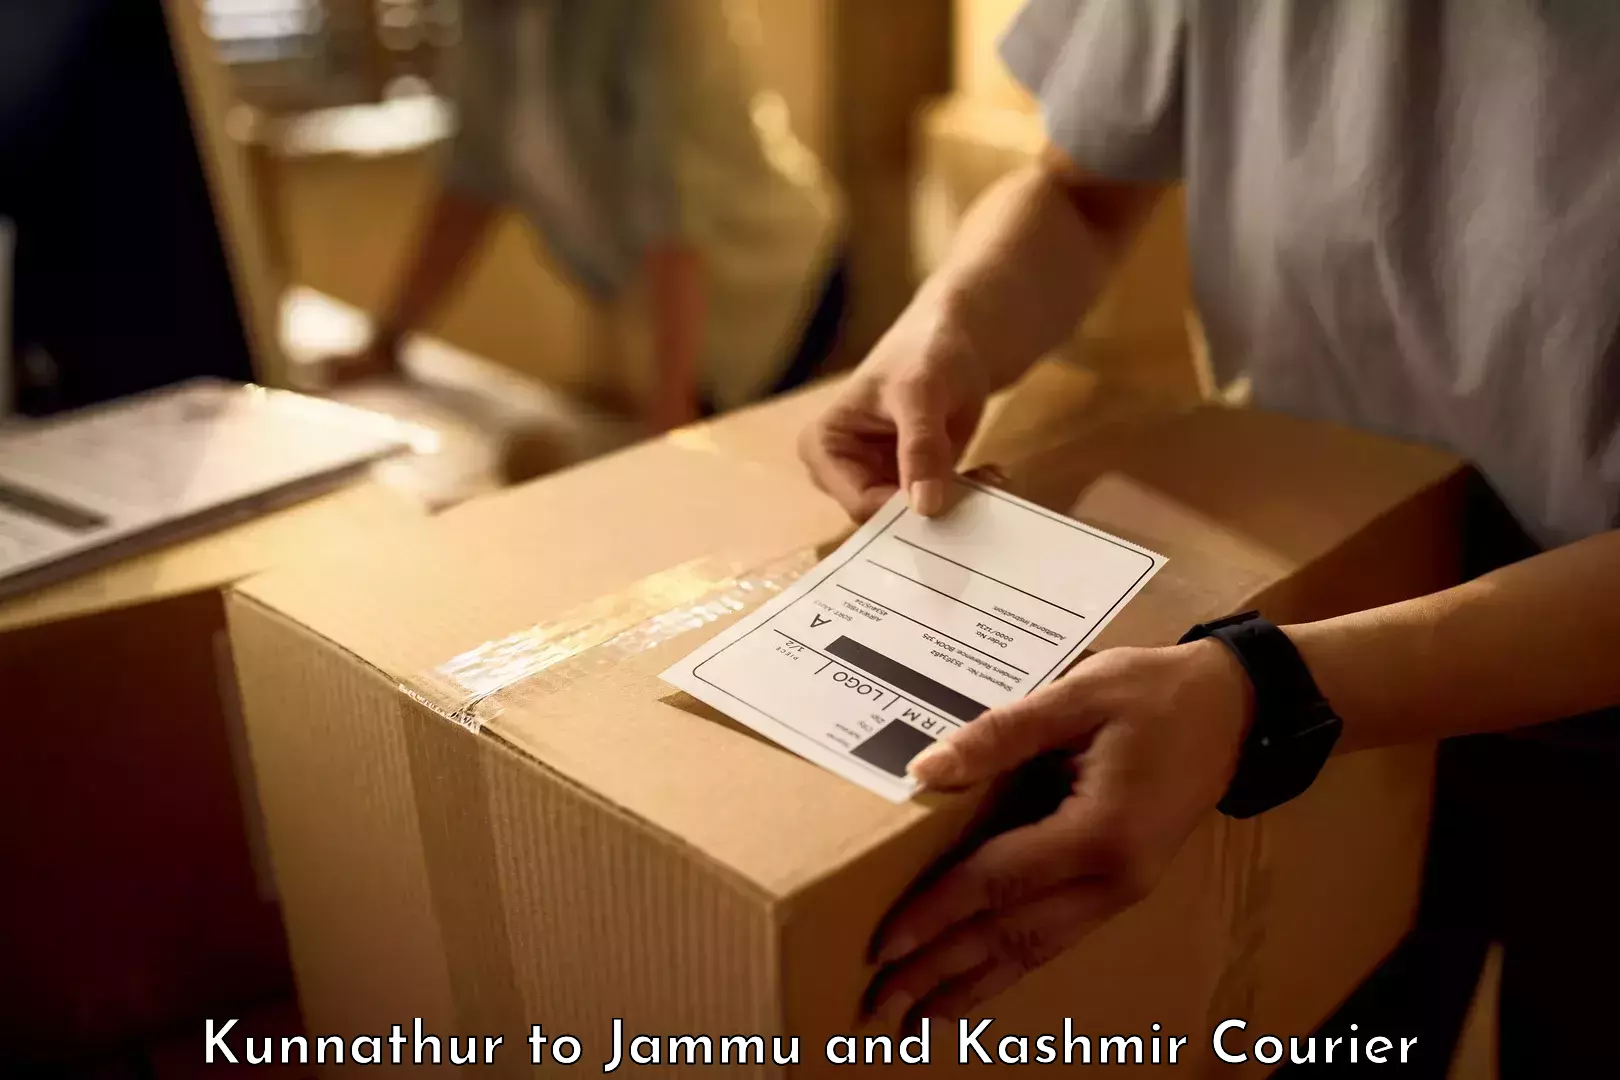 High-quality baggage shipment Kunnathur to University of Jammu